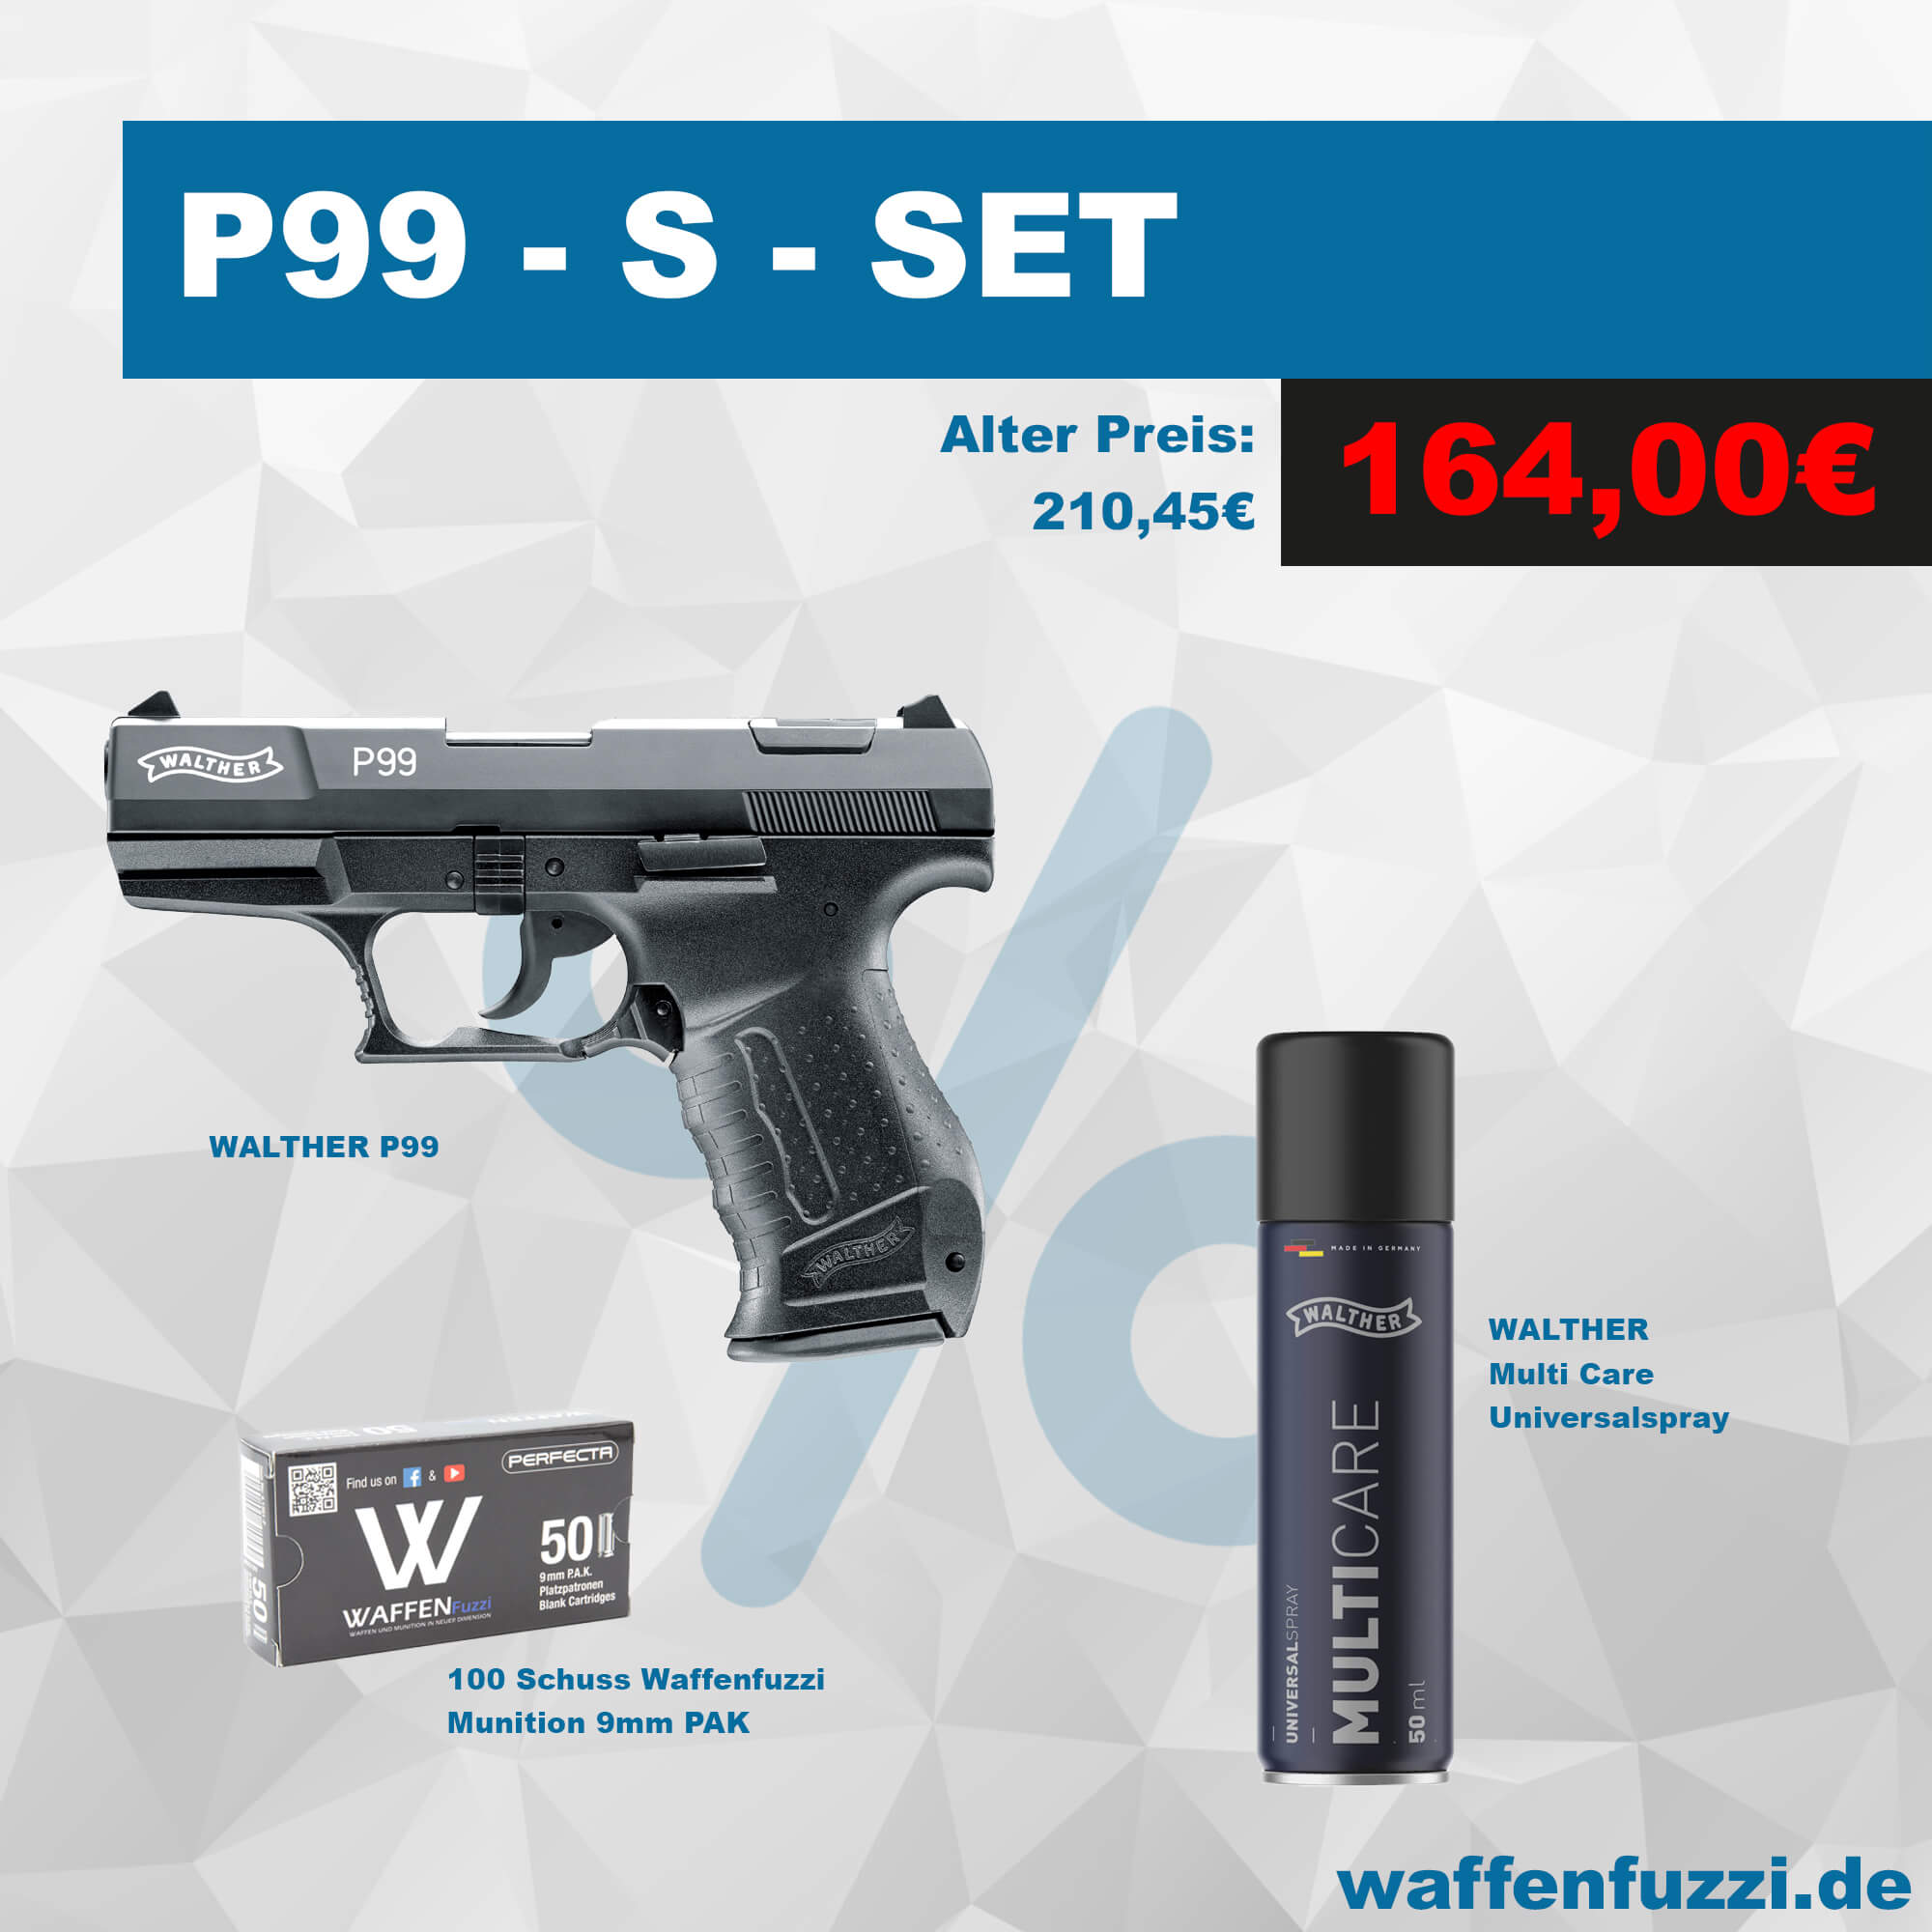 Walther P99 S Set inkl. 100 Schuss Munition + Pflegeöl bereits ab € 164